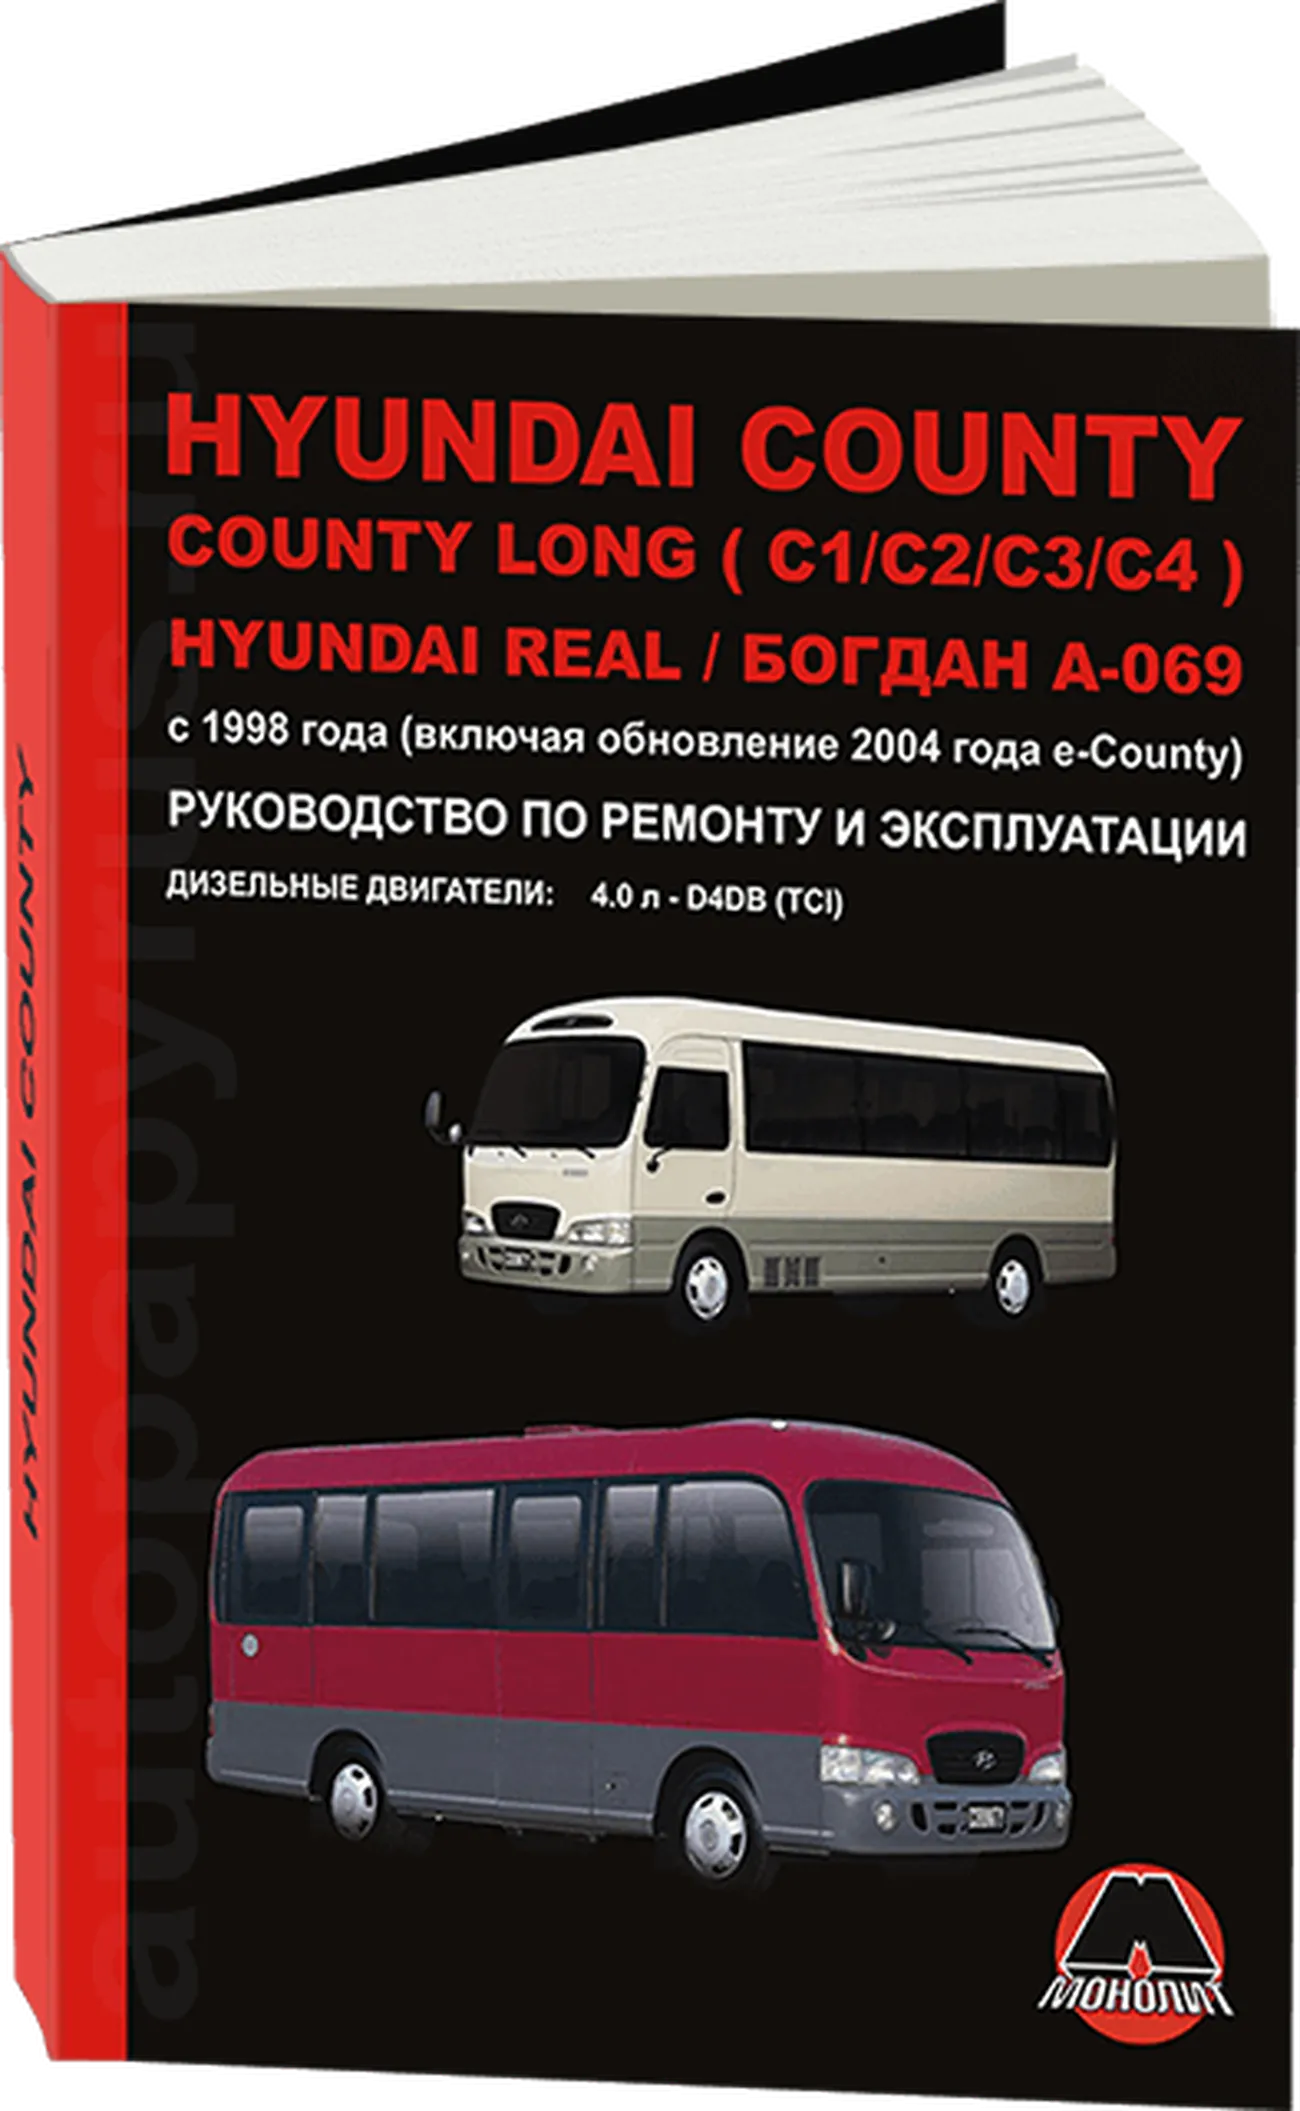 Книга: HYUNDAI COUNTY / COUNTY LONG (C1 / C2 / C3 / C4) / REAL / БОГДАН А-069 (д) с 1998 г.в., рем., экспл., то, сер. ЗС | Монолит